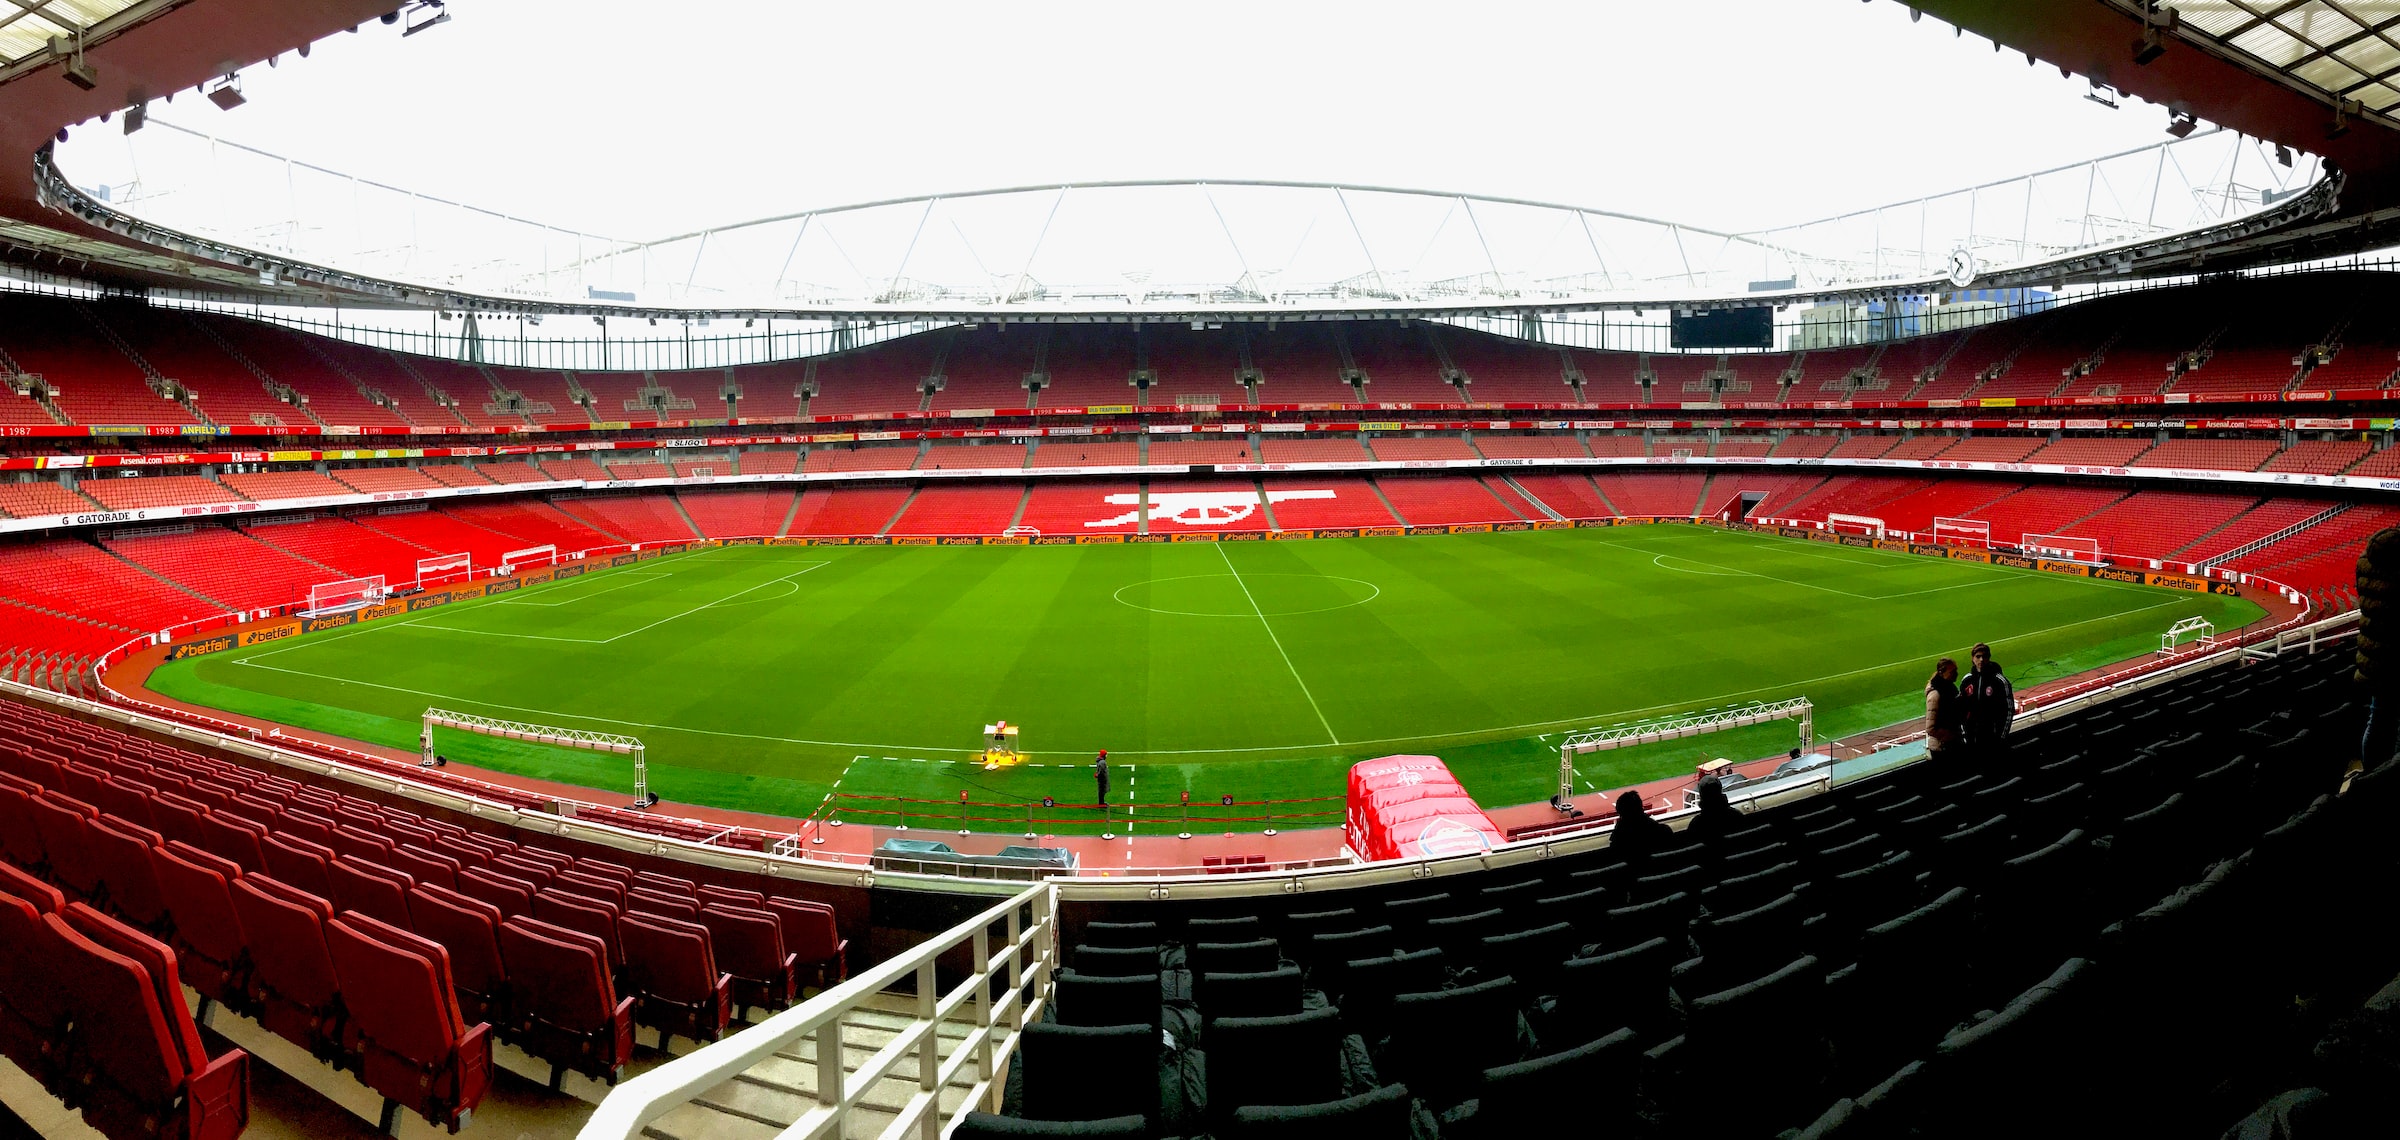 Emirates stadium in London